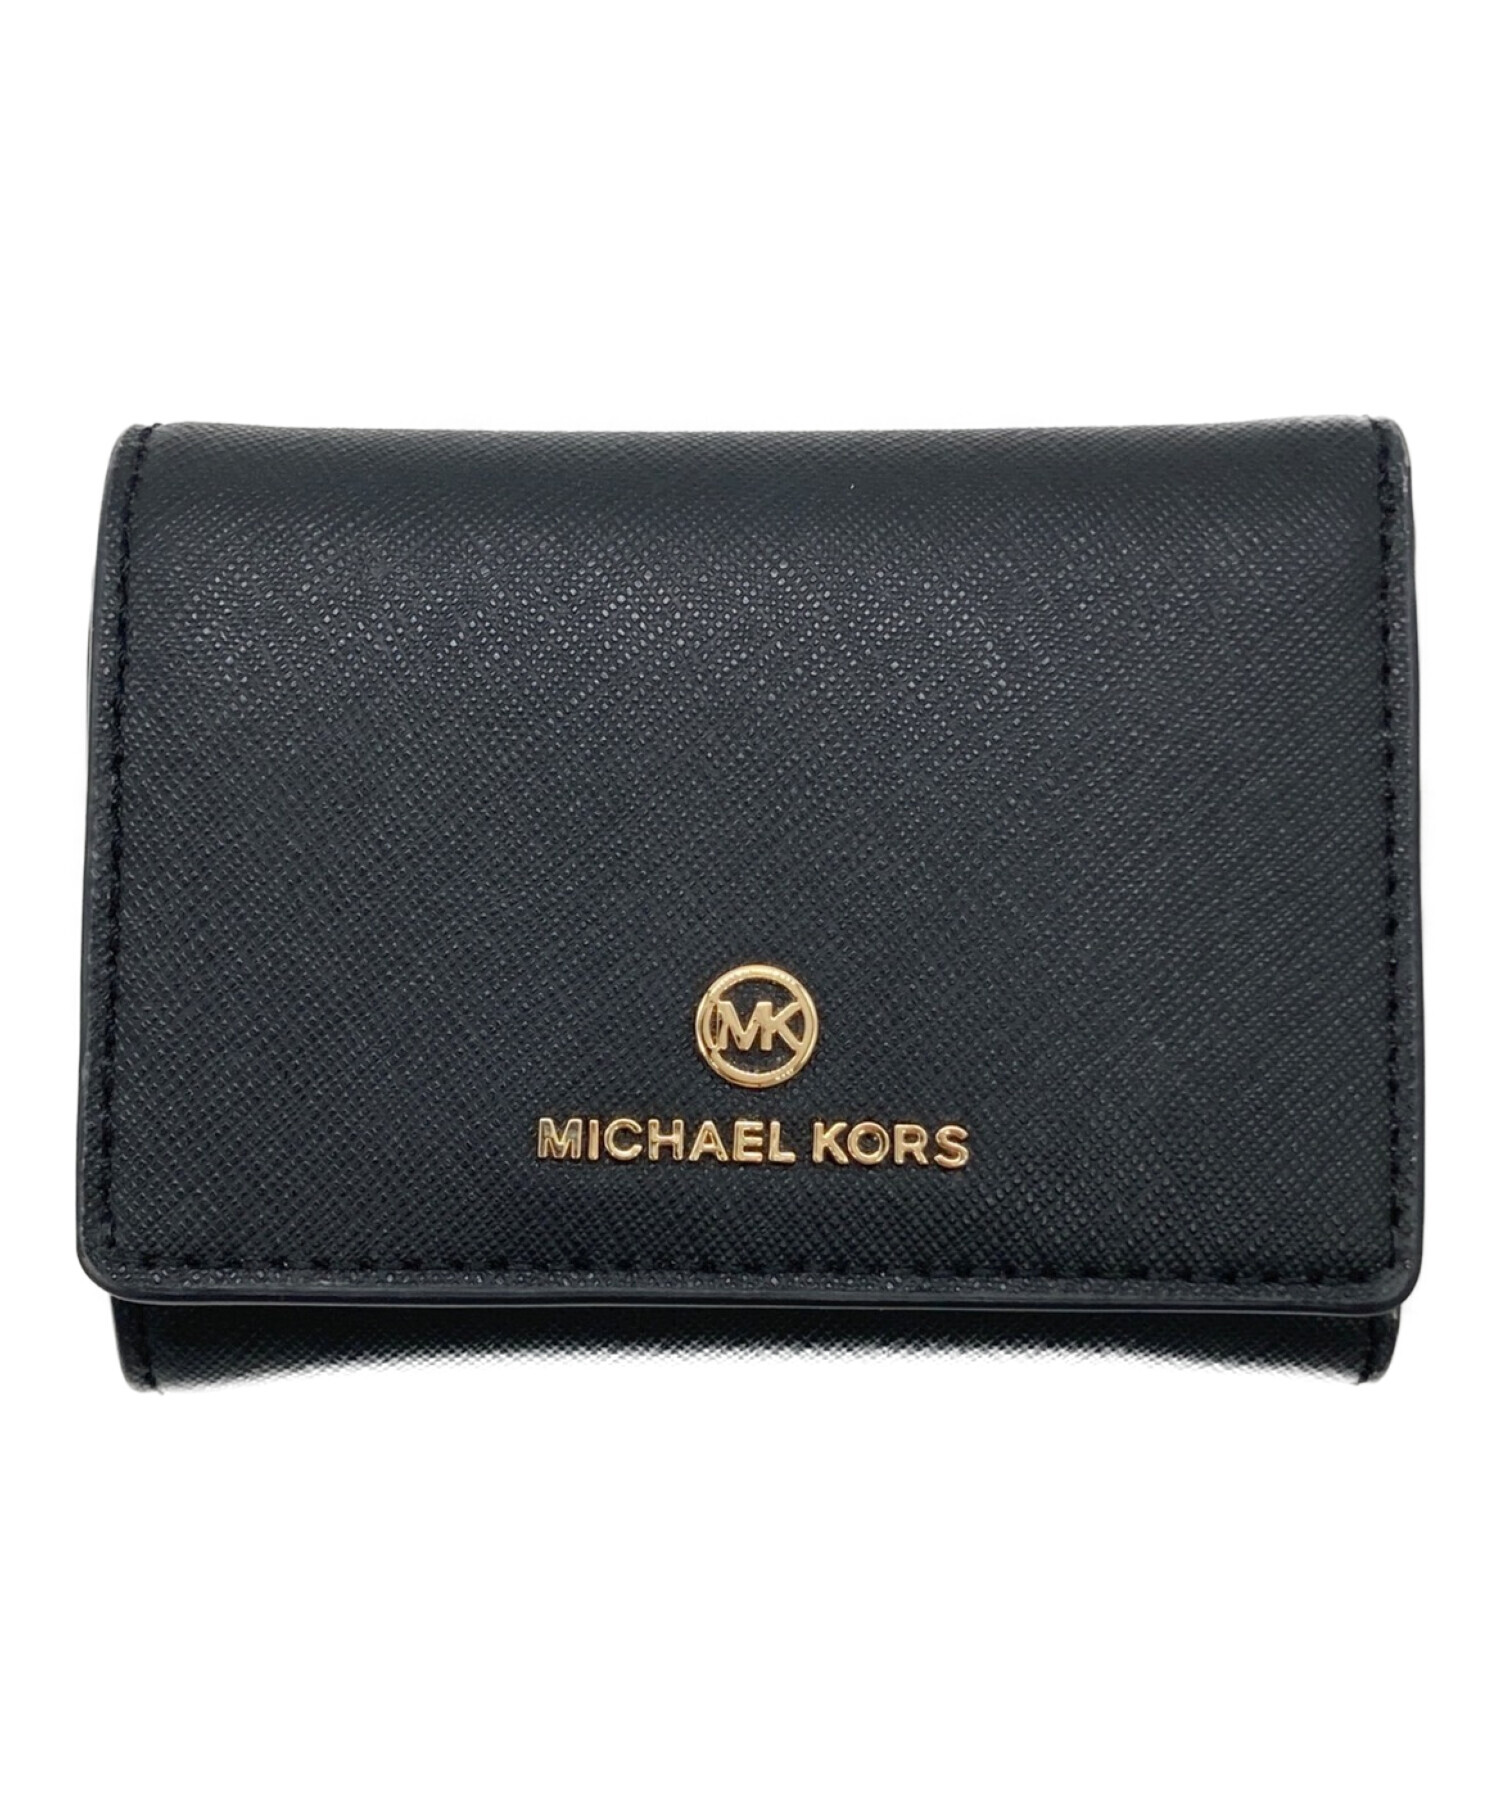 新品 マイケルコース 定価28,600円 三つ折り財布 シグネチャーピンク